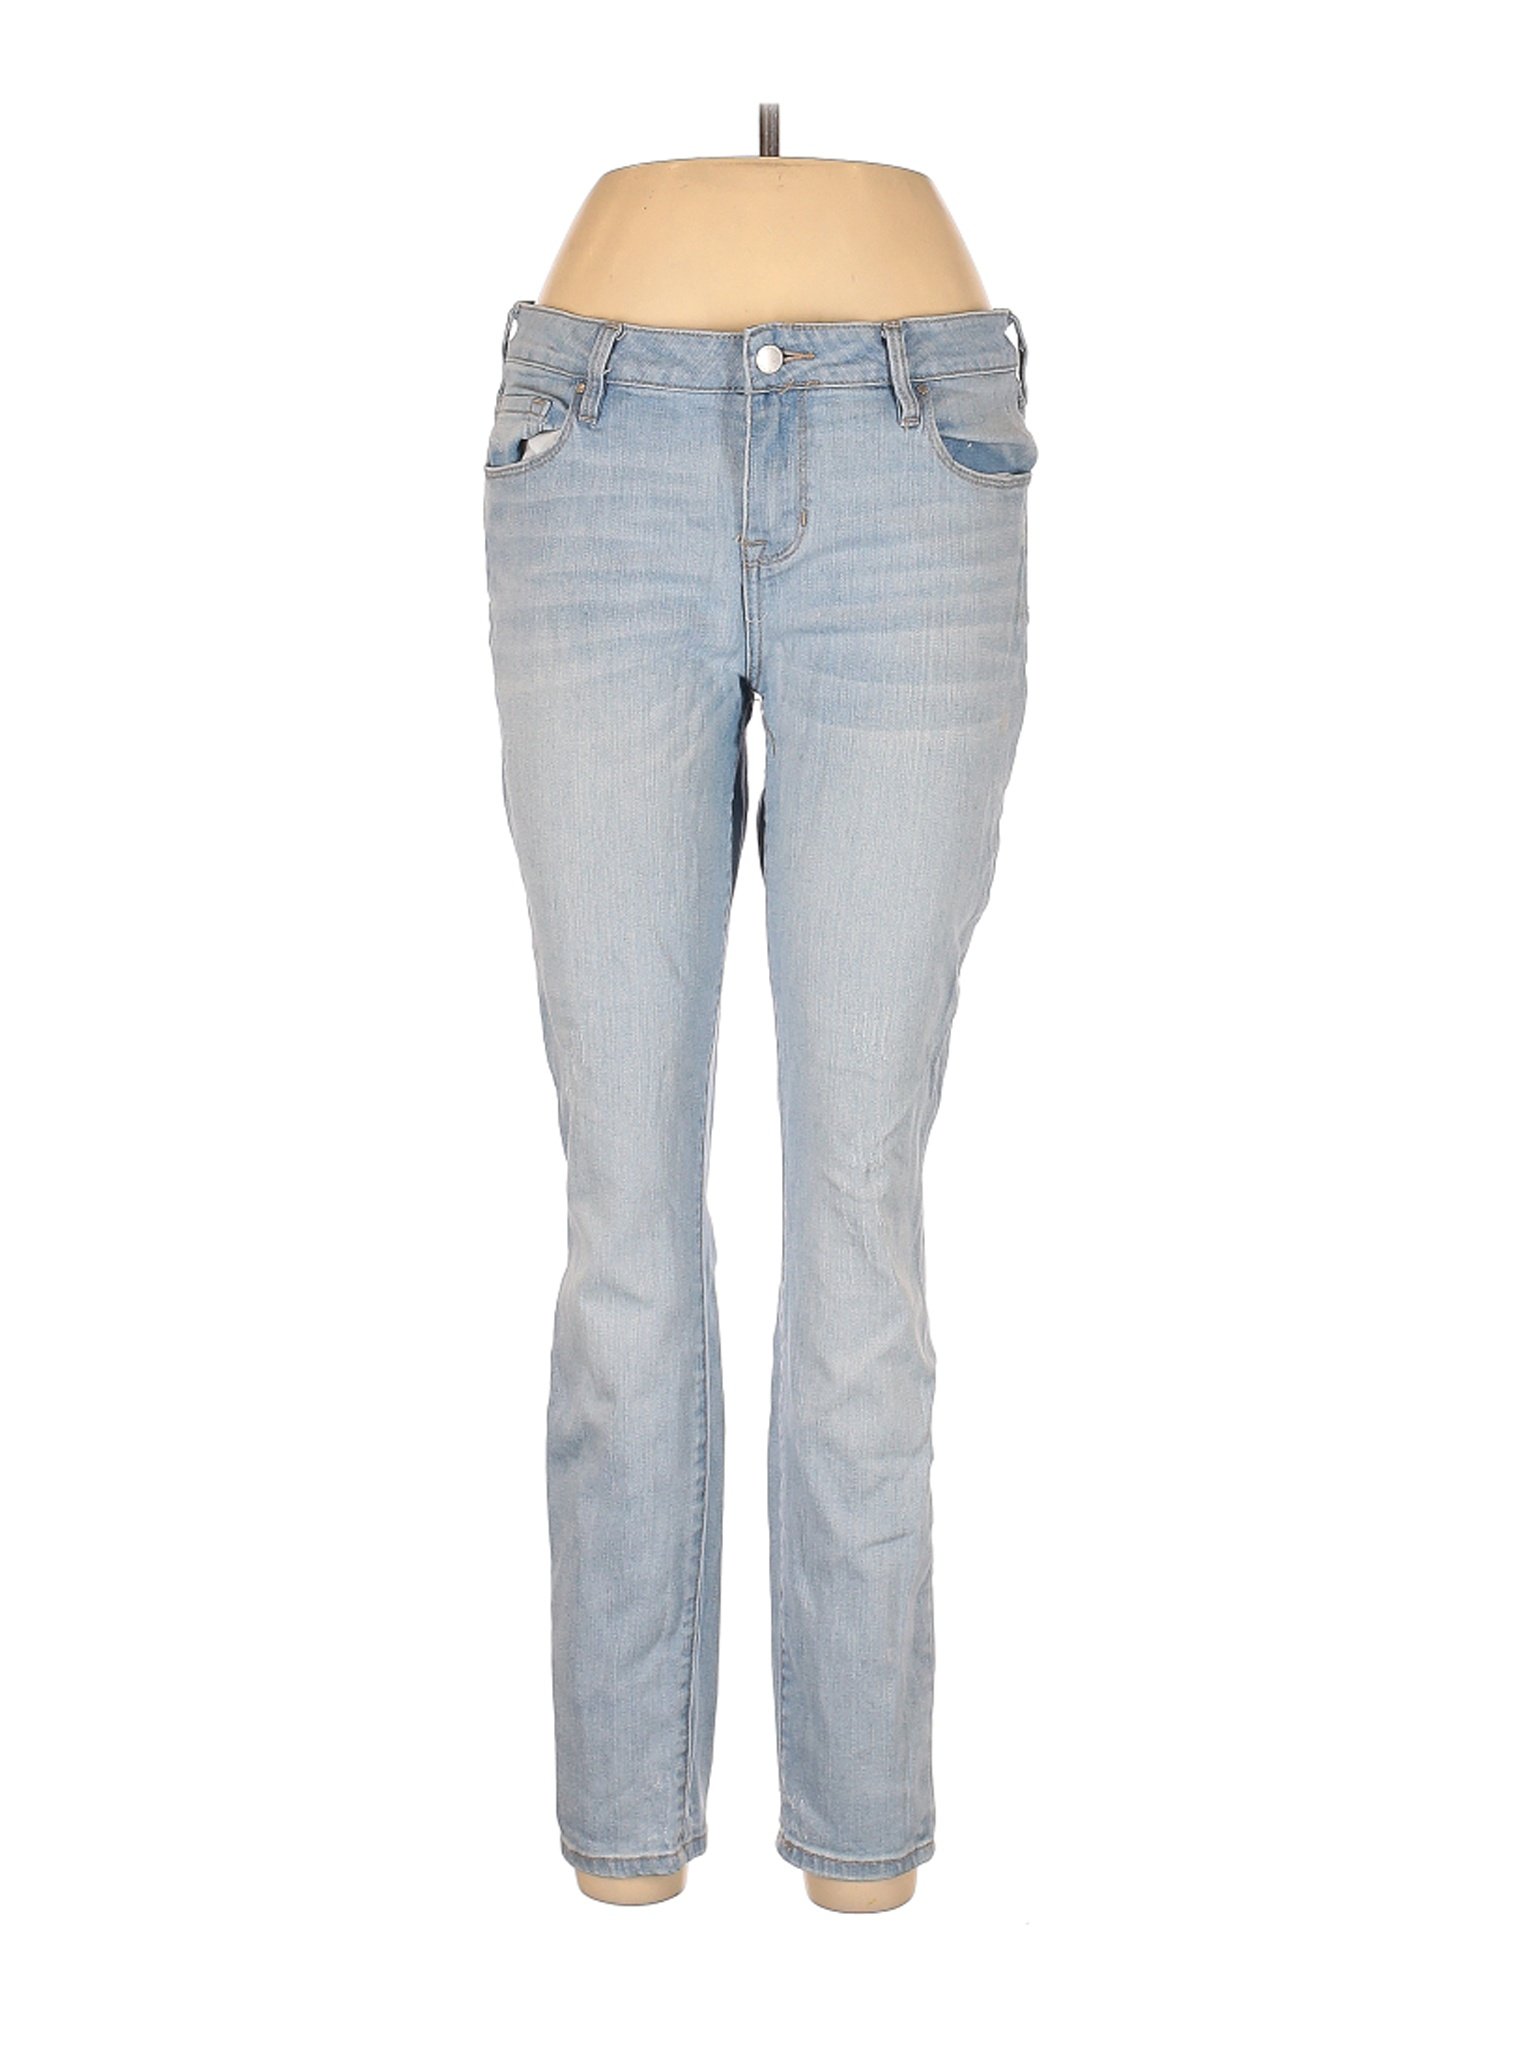 Bullhead Women Blue Jeans 30W | eBay